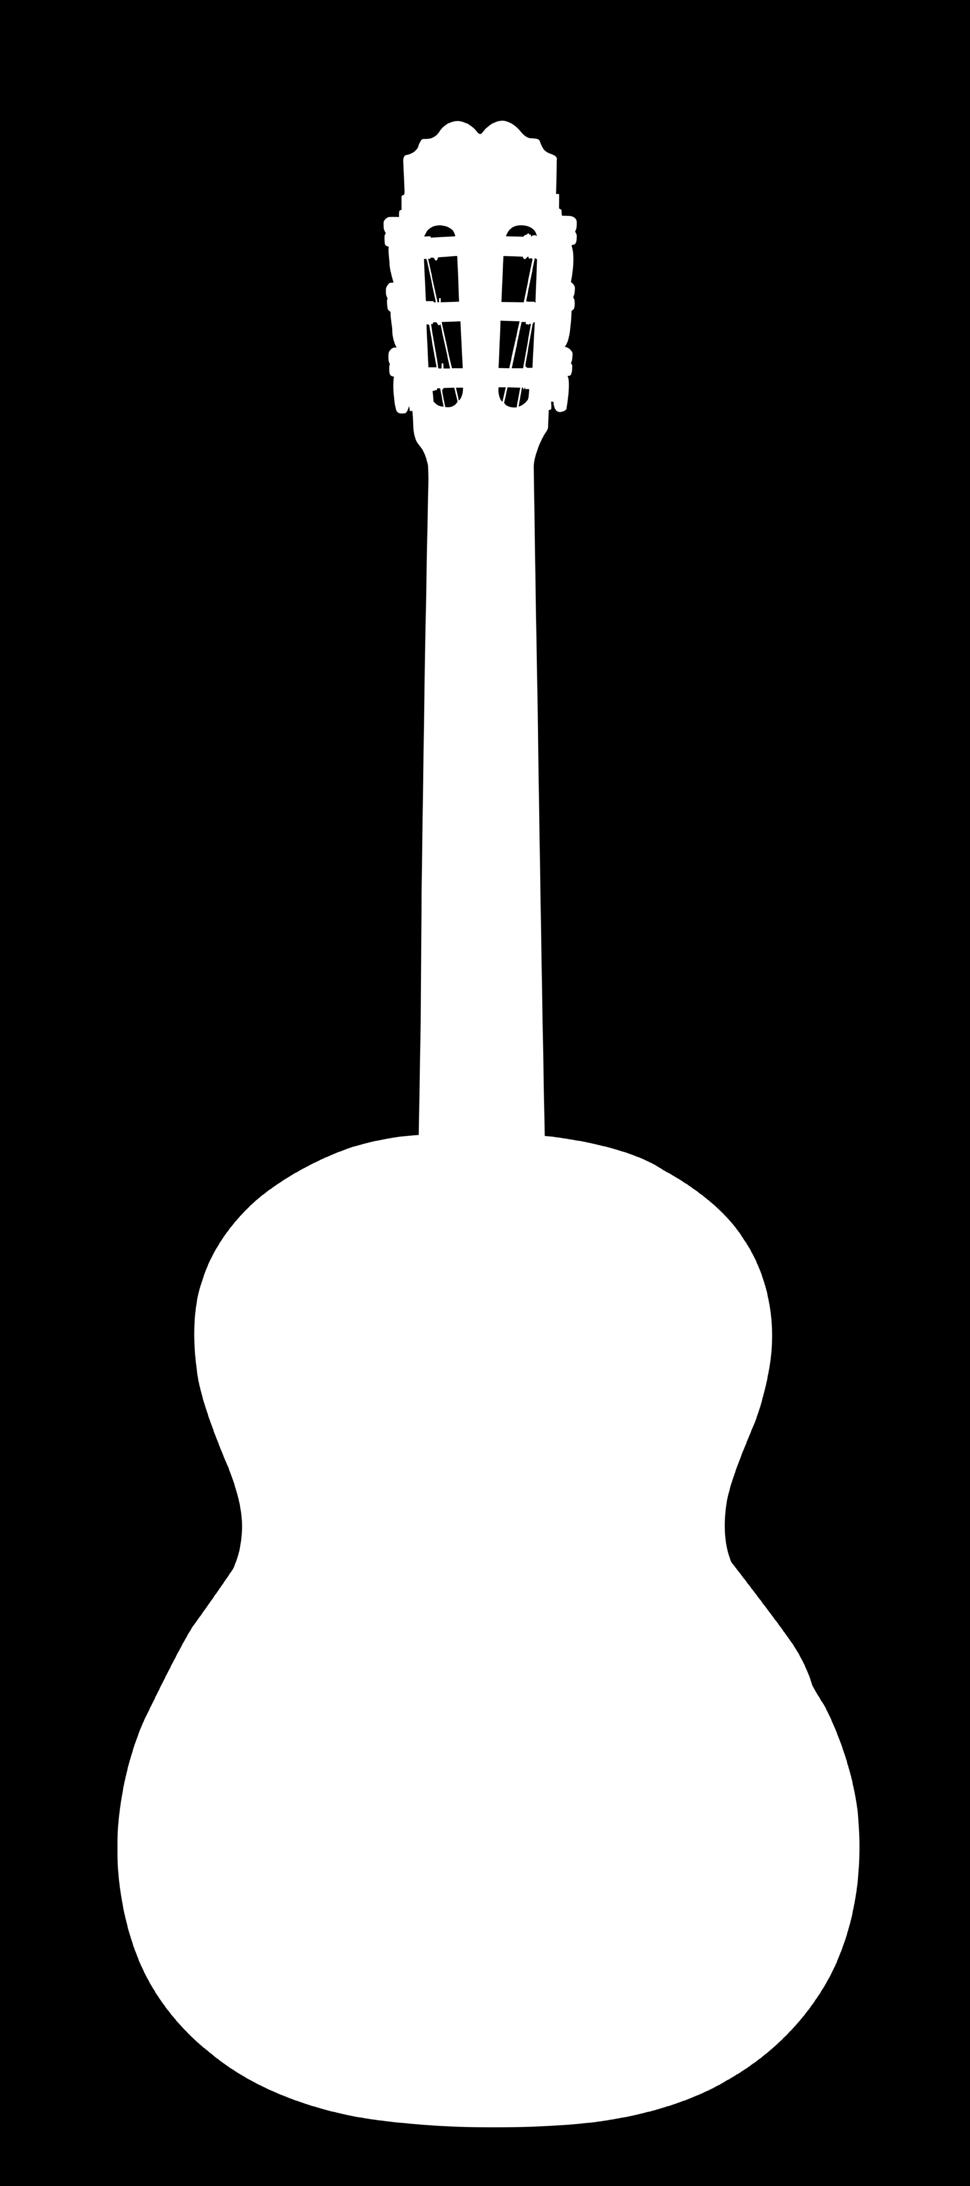 Chitarra Classica Superior Level DT CG MELODY Queste chitarre come da definizione sono di LIVELLO SUPERIORE.